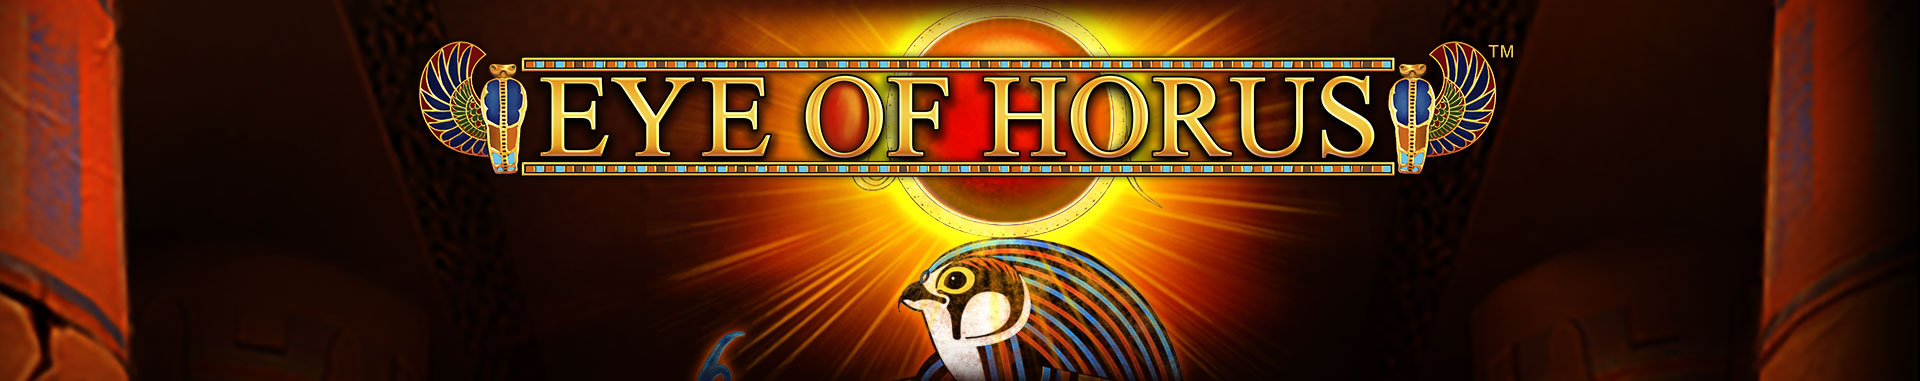 Tragaperras online Eye of Horus